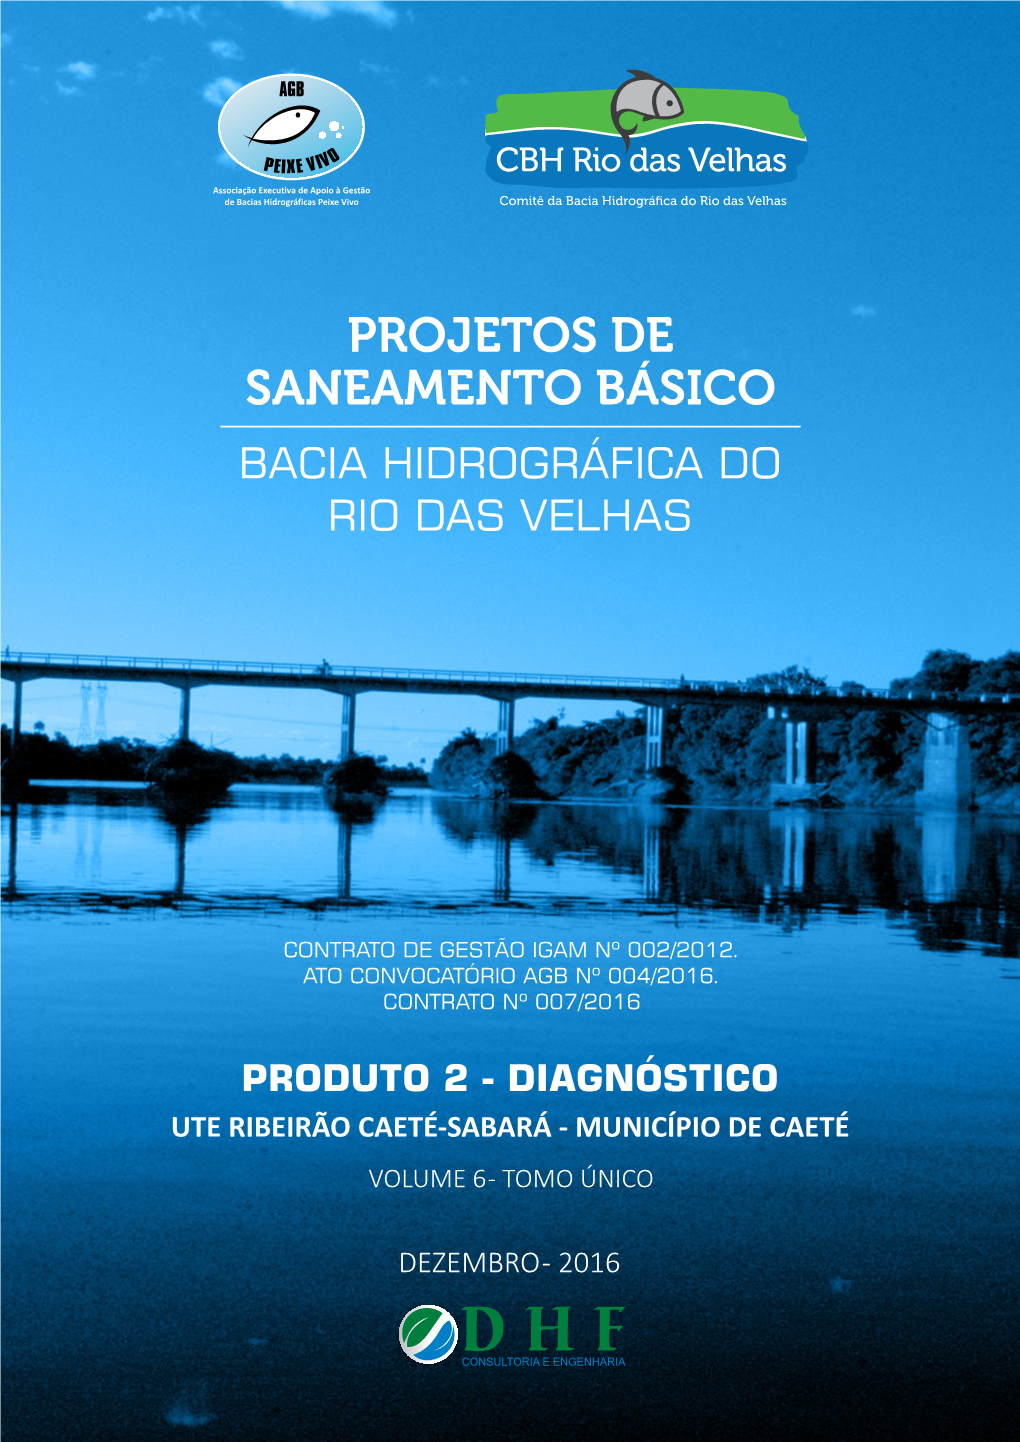 Ute Ribeirão Caeté-Sabará - Município De Caeté Volume 6 - Tomo Único